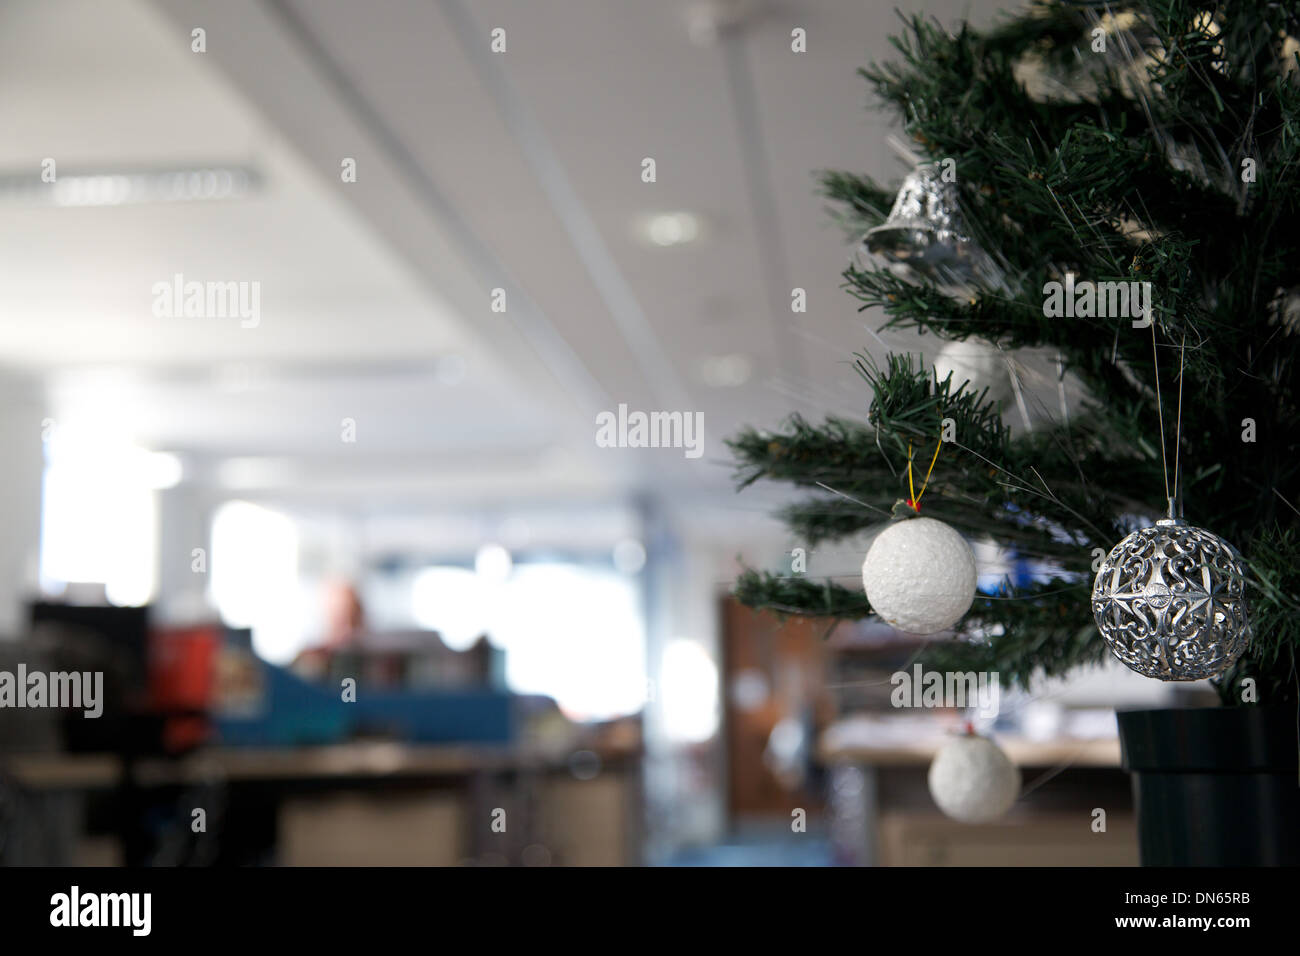 Chỉ với chút sáng tạo và tình yêu đối với mùa Giáng Sinh, cây thông trang trí trong Văn Phòng cũng sẽ trở nên rực rỡ, lung linh hơn bao giờ hết. Hãy cùng điểm qua những ý tưởng trang trí cây Giáng Sinh trong Văn Phòng, cùng cảm nhận không khí lễ hội lung linh ấy.